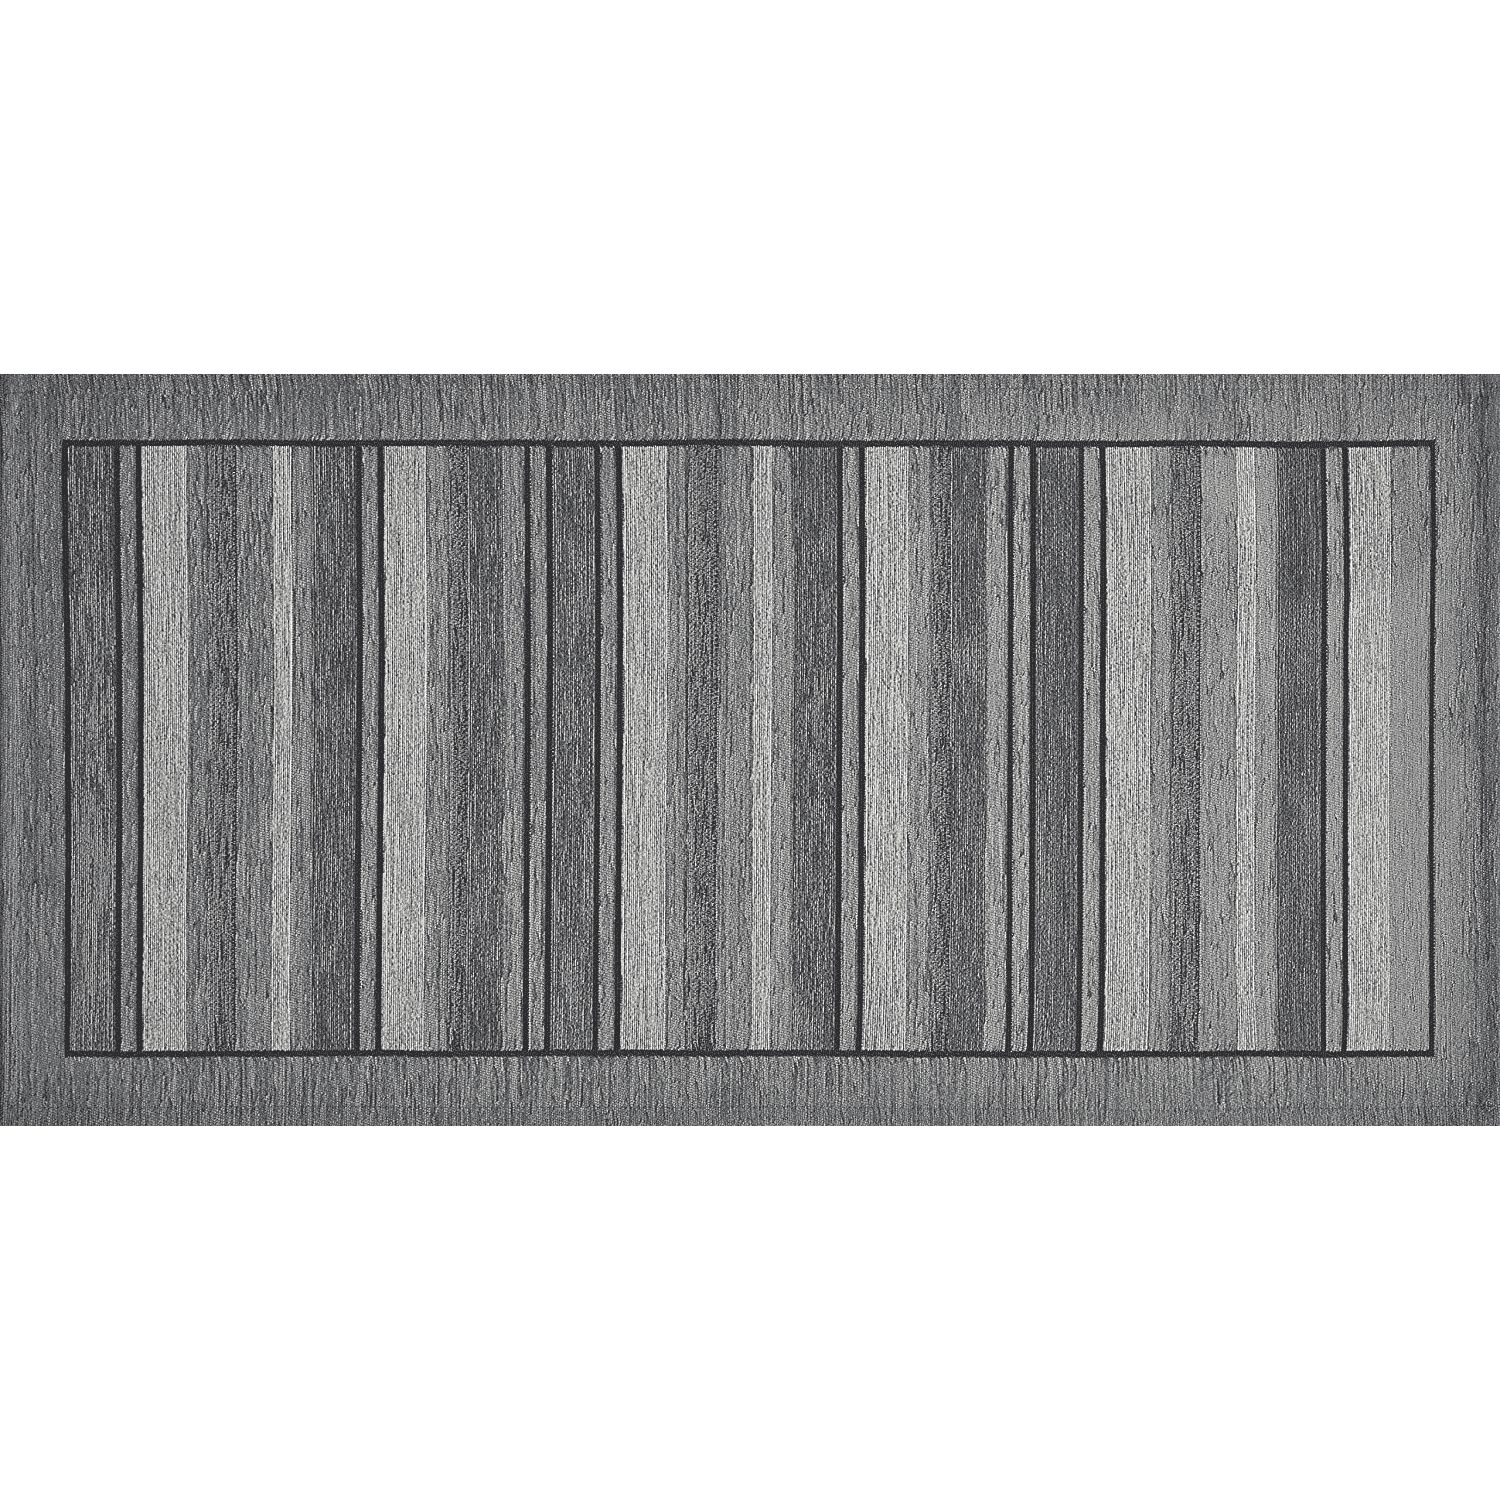 Passatoia-style-grigio-antiscivolo-filati-ciniglia-lavorazione-jacquard-made-in-italy-55x80cm-55x115cm-55x140cm-55x190cm-55x240cm-55x280cm